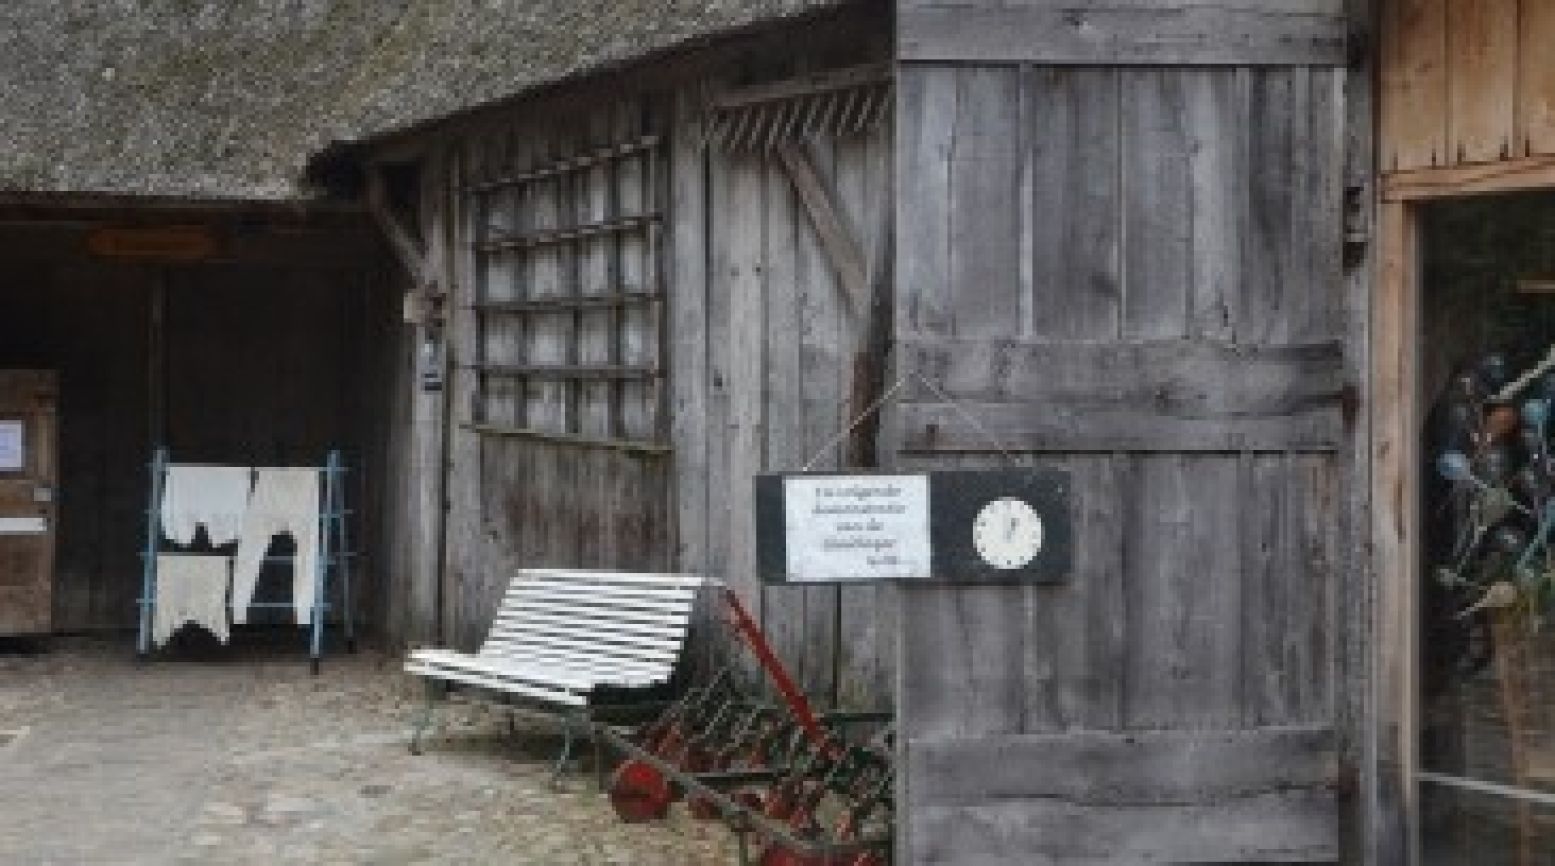 Naast de glasblazerij staat de oudste boerderij van het dorp, die stamt uit 1600. Foto: DagjeWeg.NL